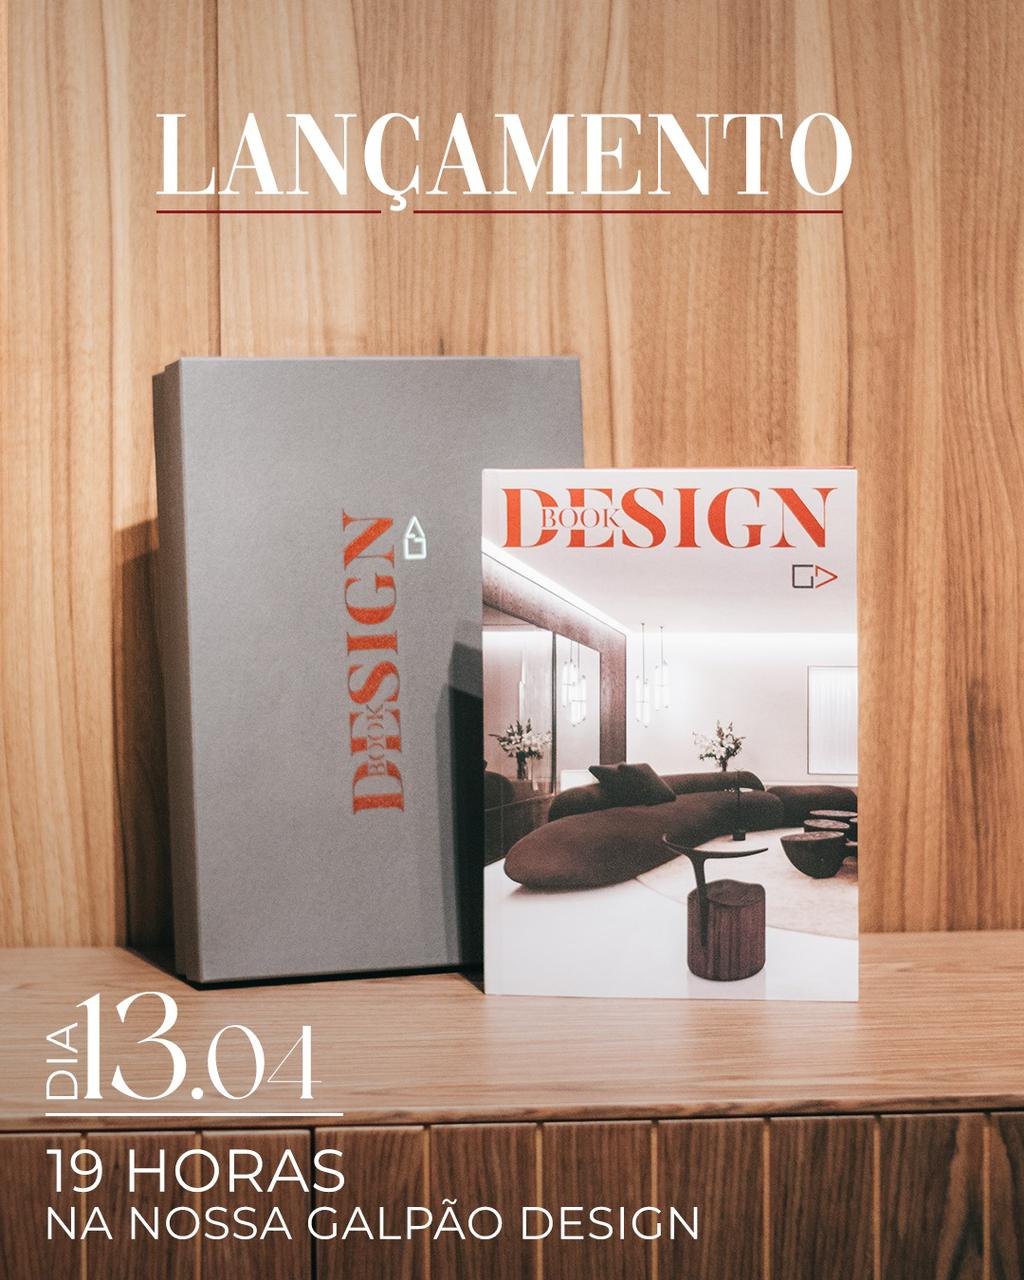 Galpão Design realiza o lançamento do seu inédito livro